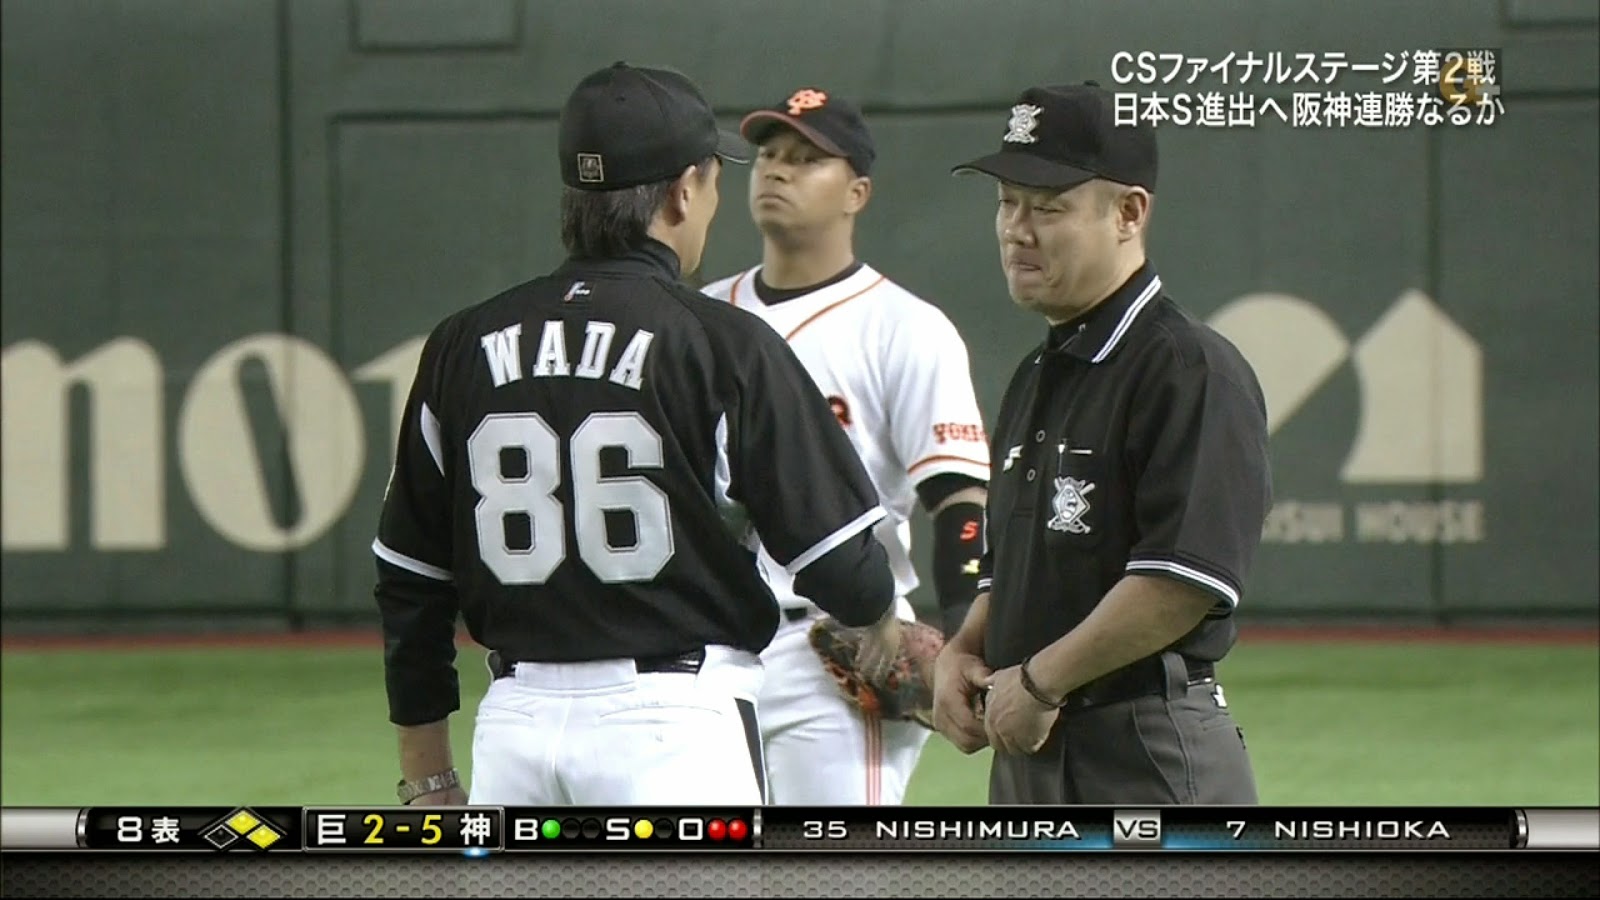 Gif ミットかすめた ファール判定に和田監督抗議 野球まとめに自信ニキ